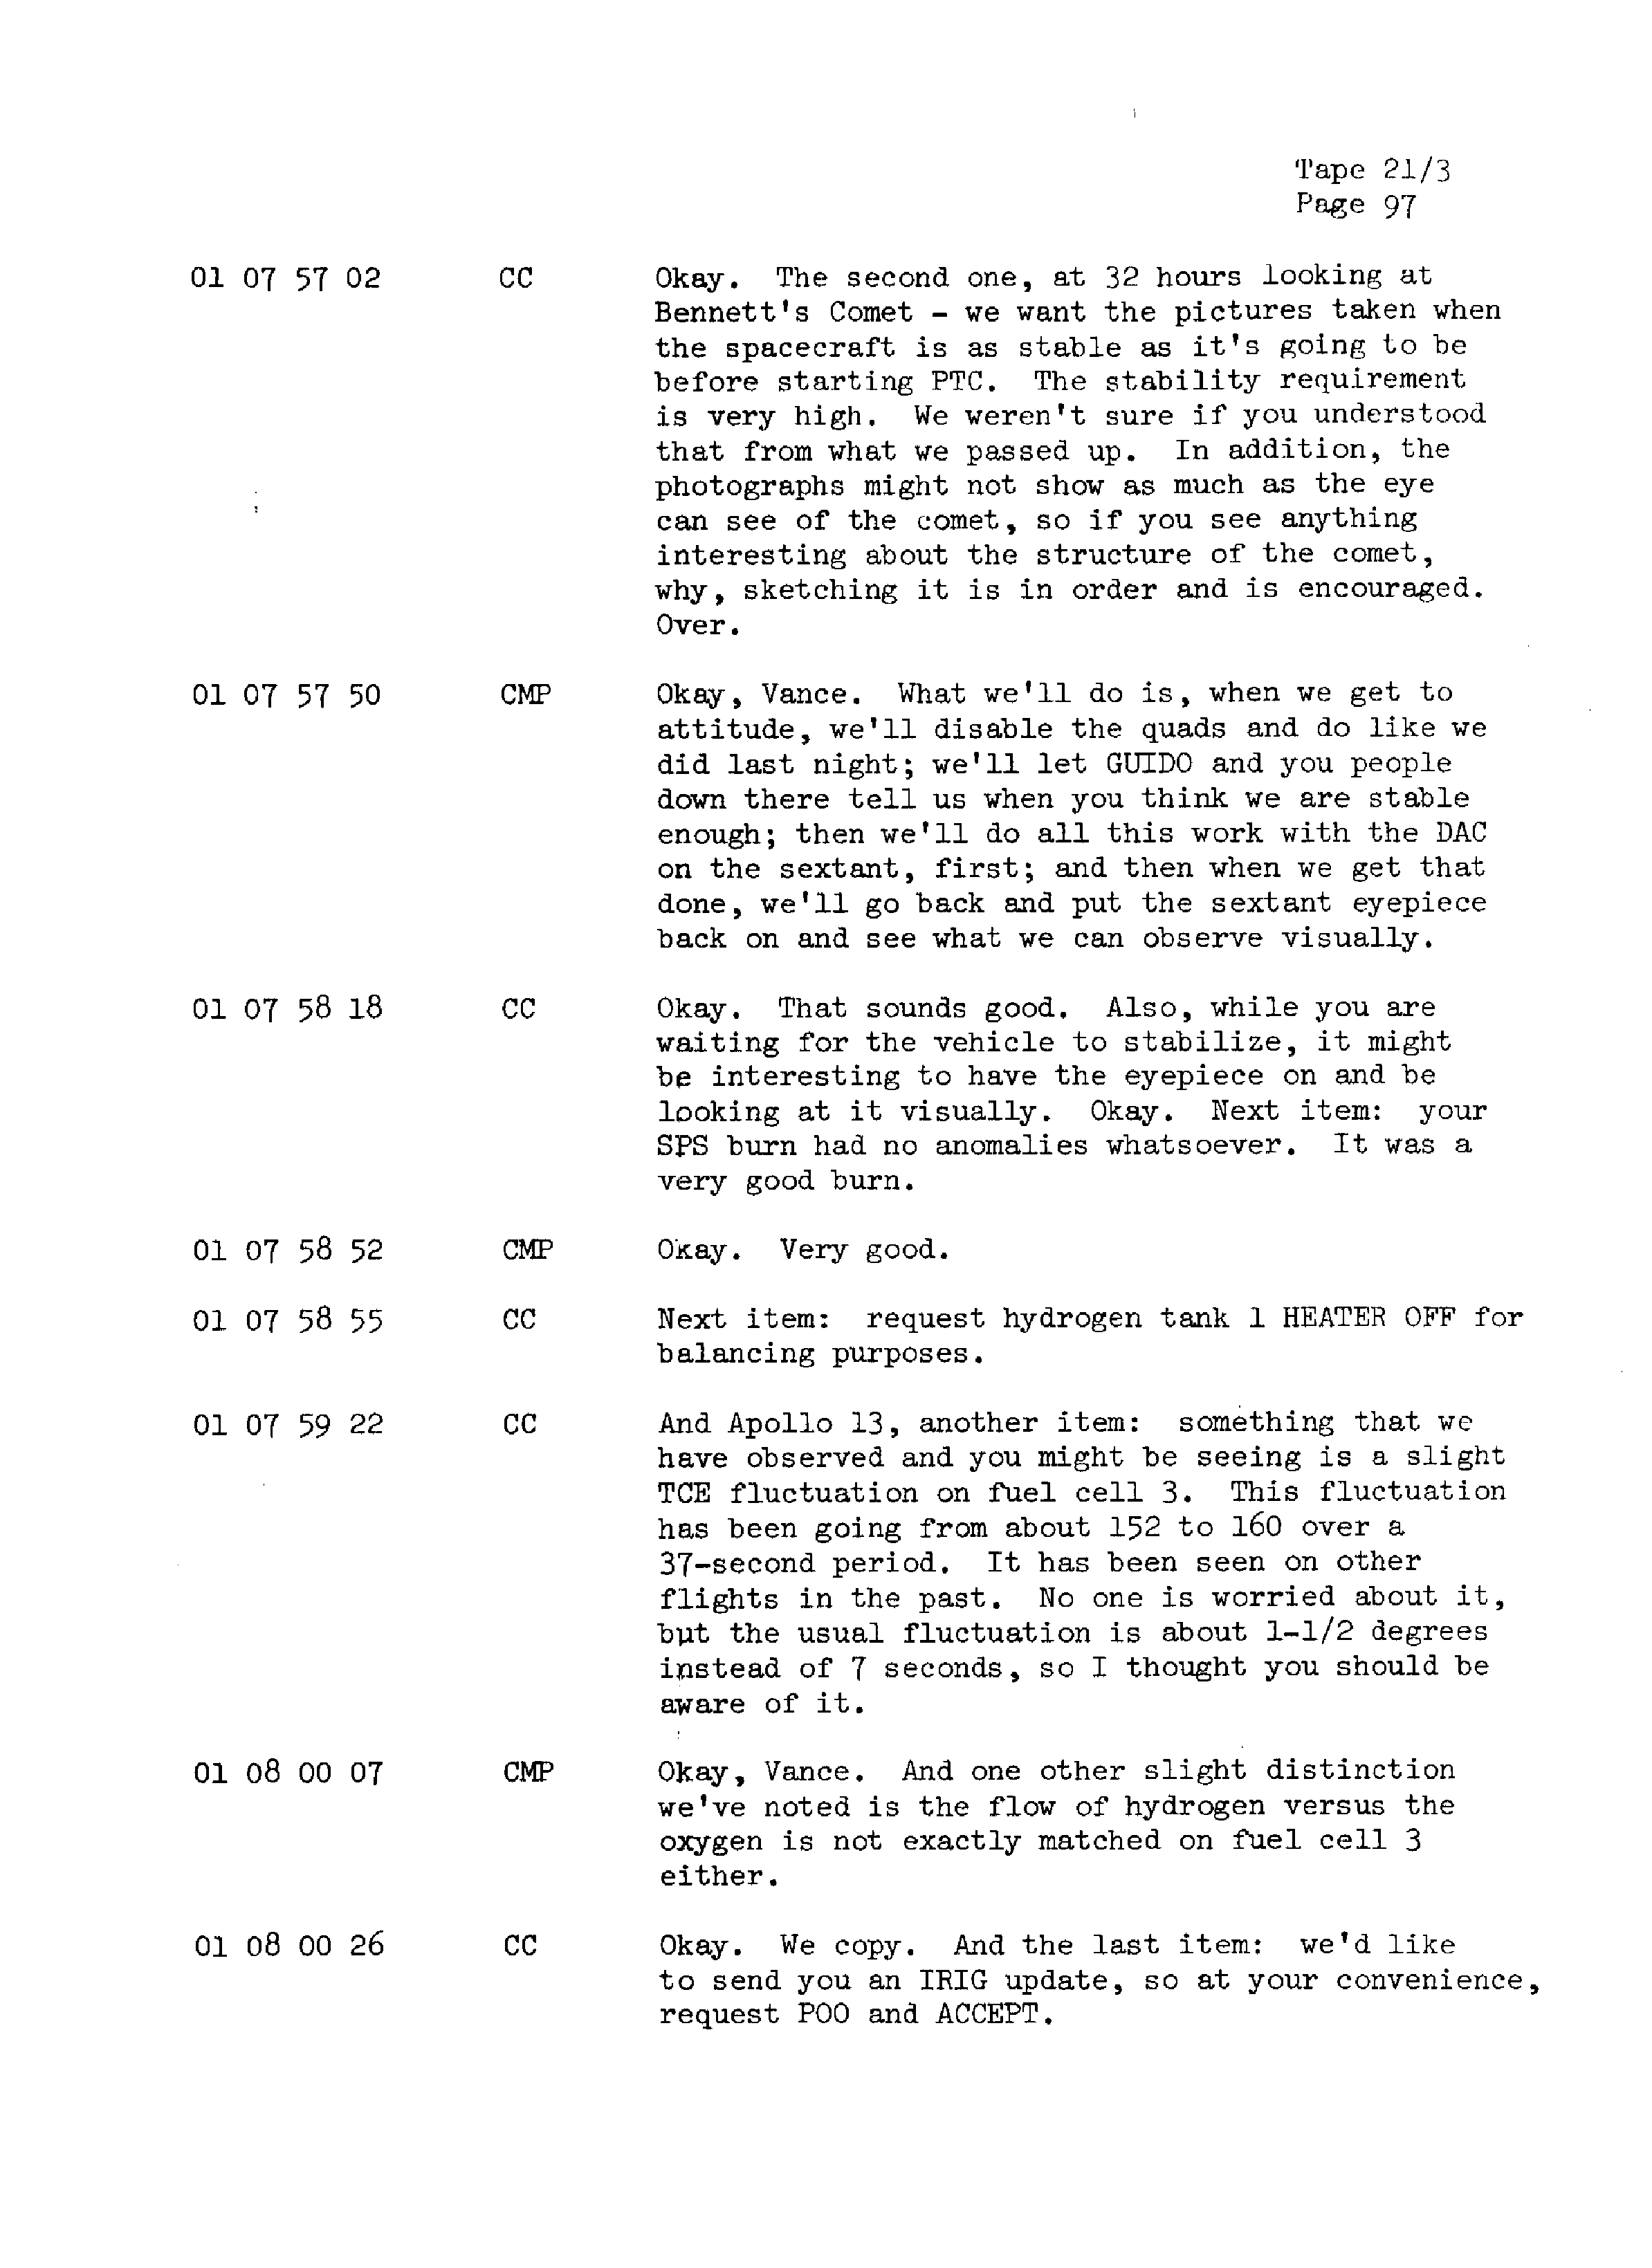 Page 104 of Apollo 13’s original transcript